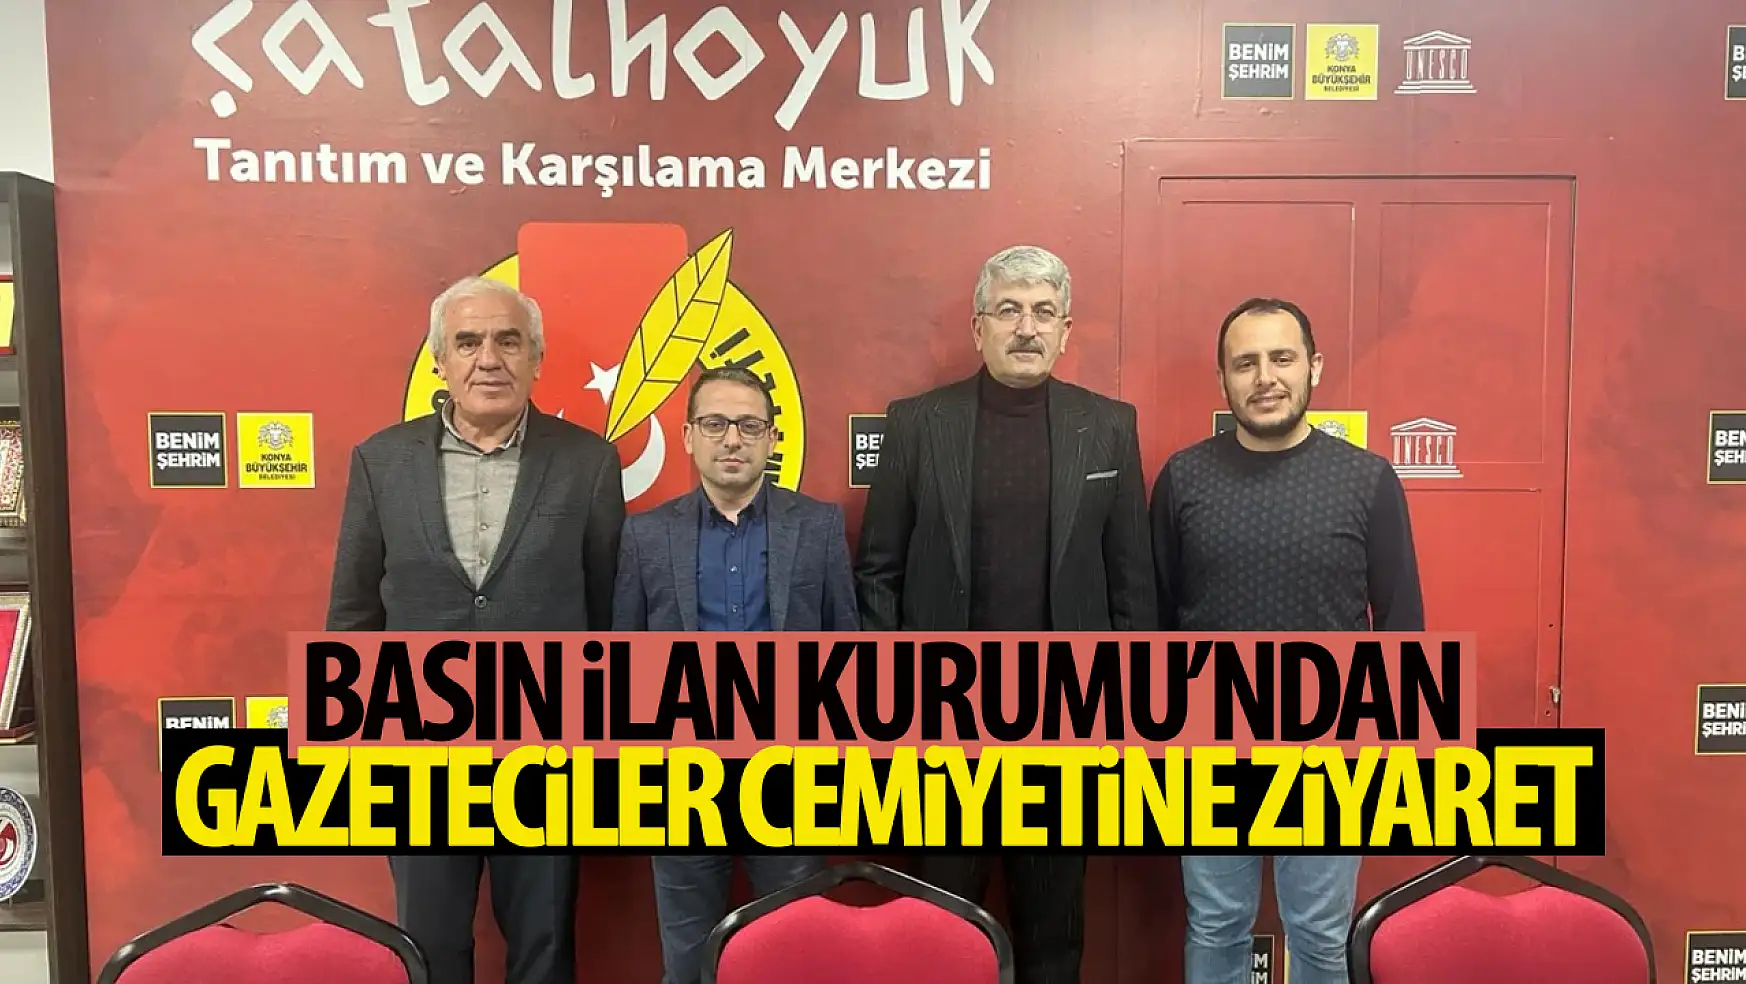 BİK'ten Konya Gazeteciler Cemiyet'ine hayırlı olsun ziyareti